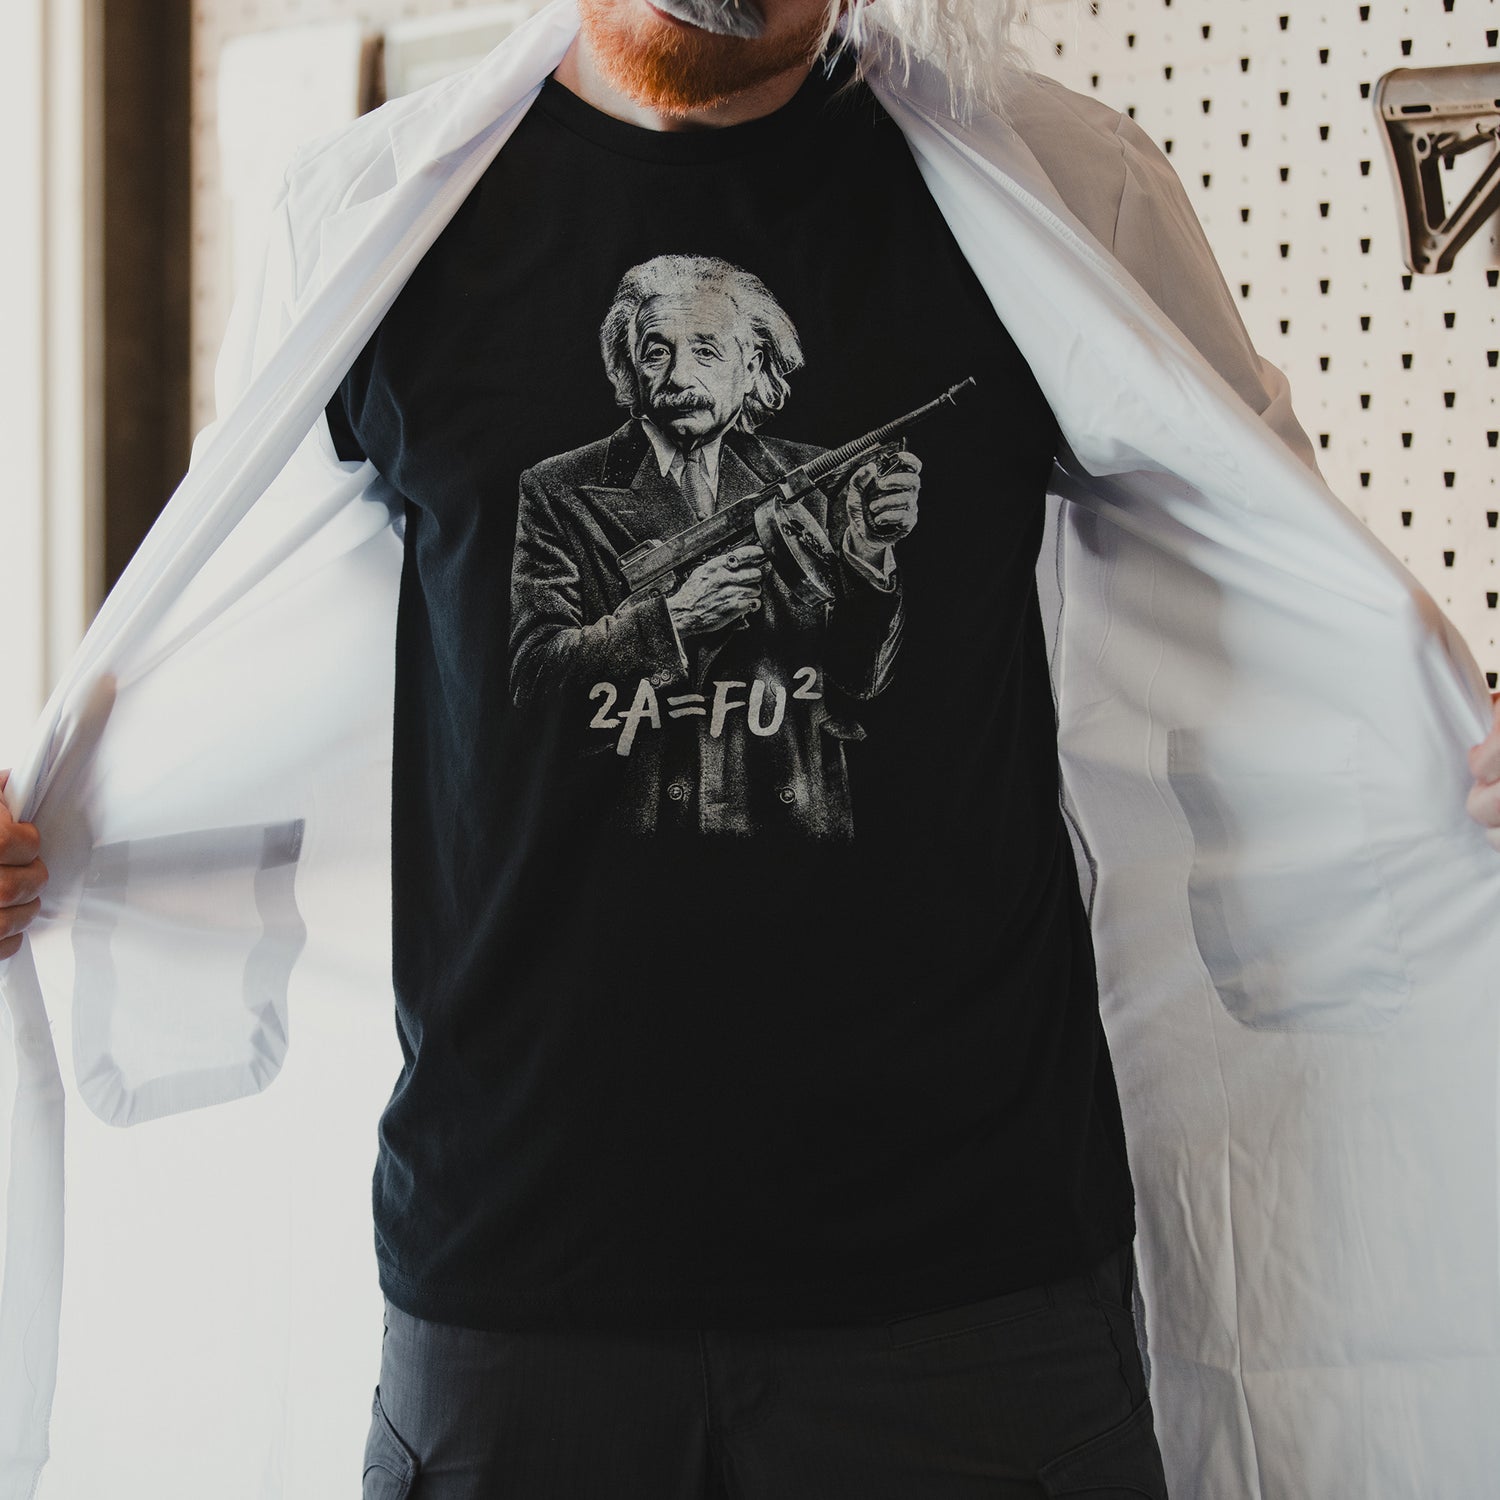 Funny Gun Shirts for Men - Einstein shirts